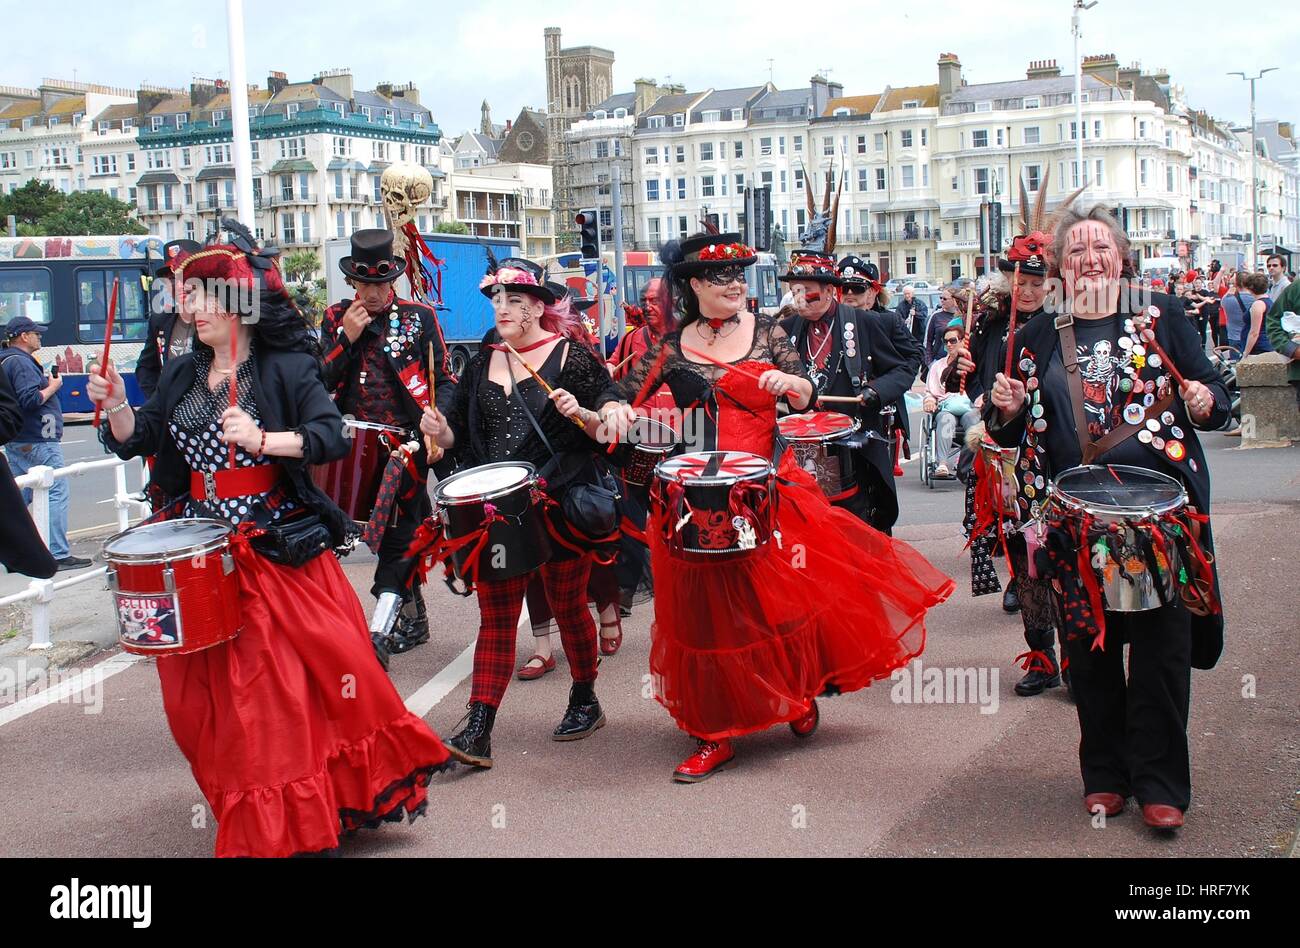 Der Abschnitt fünf Schlagzeuger parade entlang der Strandpromenade während des jährlichen Festivals der St.Leonards bei St.Leonards-on-Sea, England am 9. Juli 2016. Stockfoto